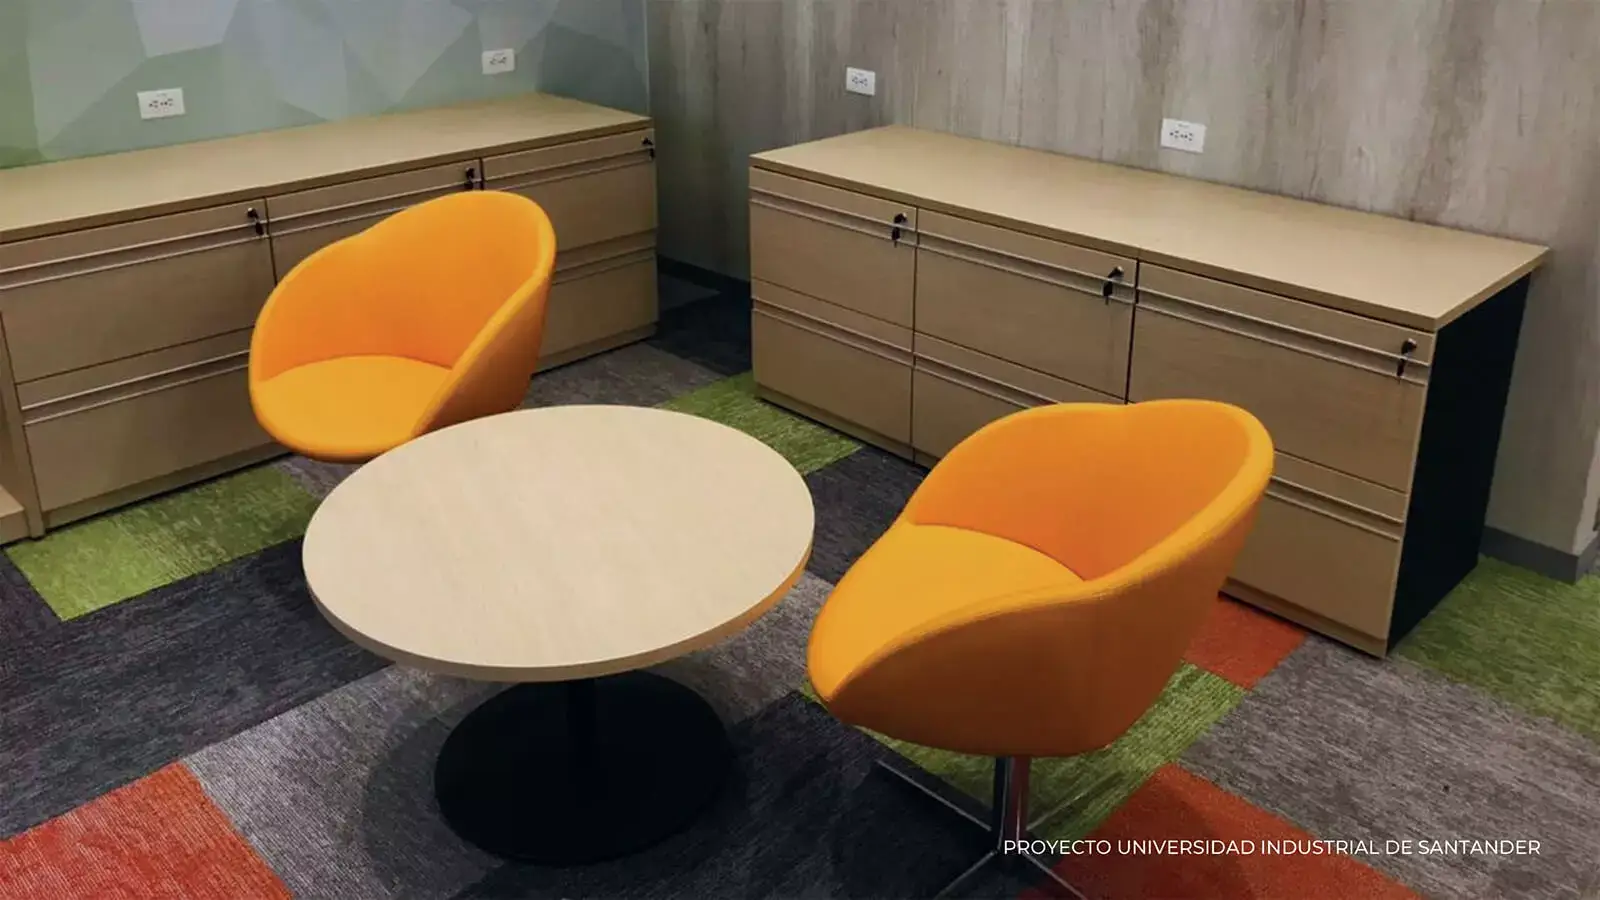 Espacio de oficina moderno con dos sillas naranjas, una mesa redonda y armarios de almacenamiento de madera, con una alfombra multicolor. superposición de texto: proyecto universidad industrial santander.